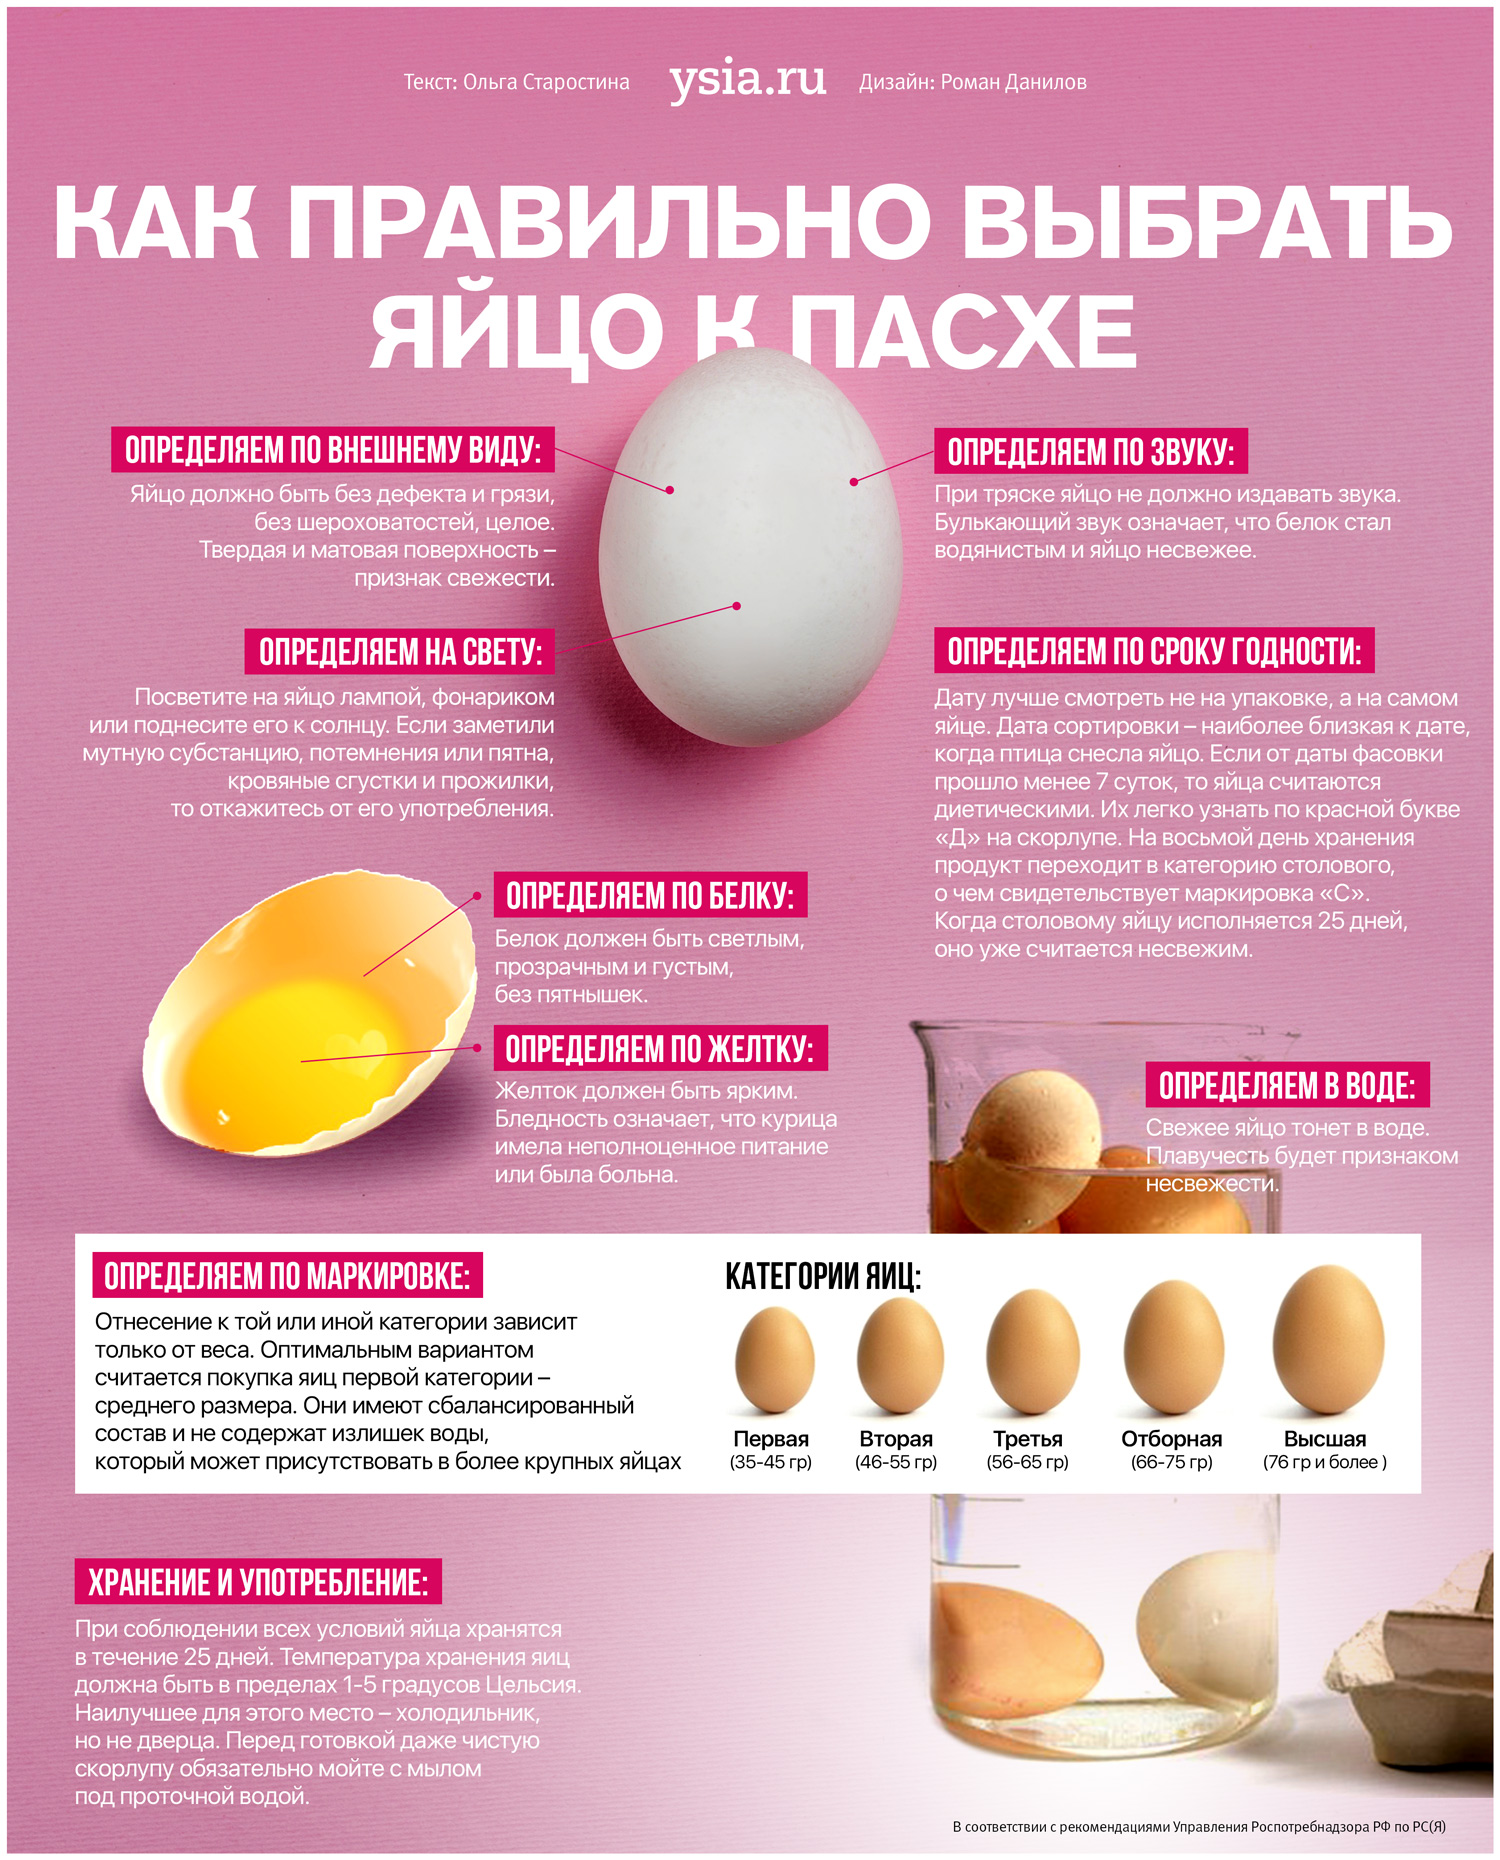 Можно говорить яичко. Как выбрать яйца. Как правильно выбирать яйца. Инфографика яйцо. Категории яиц куриных.